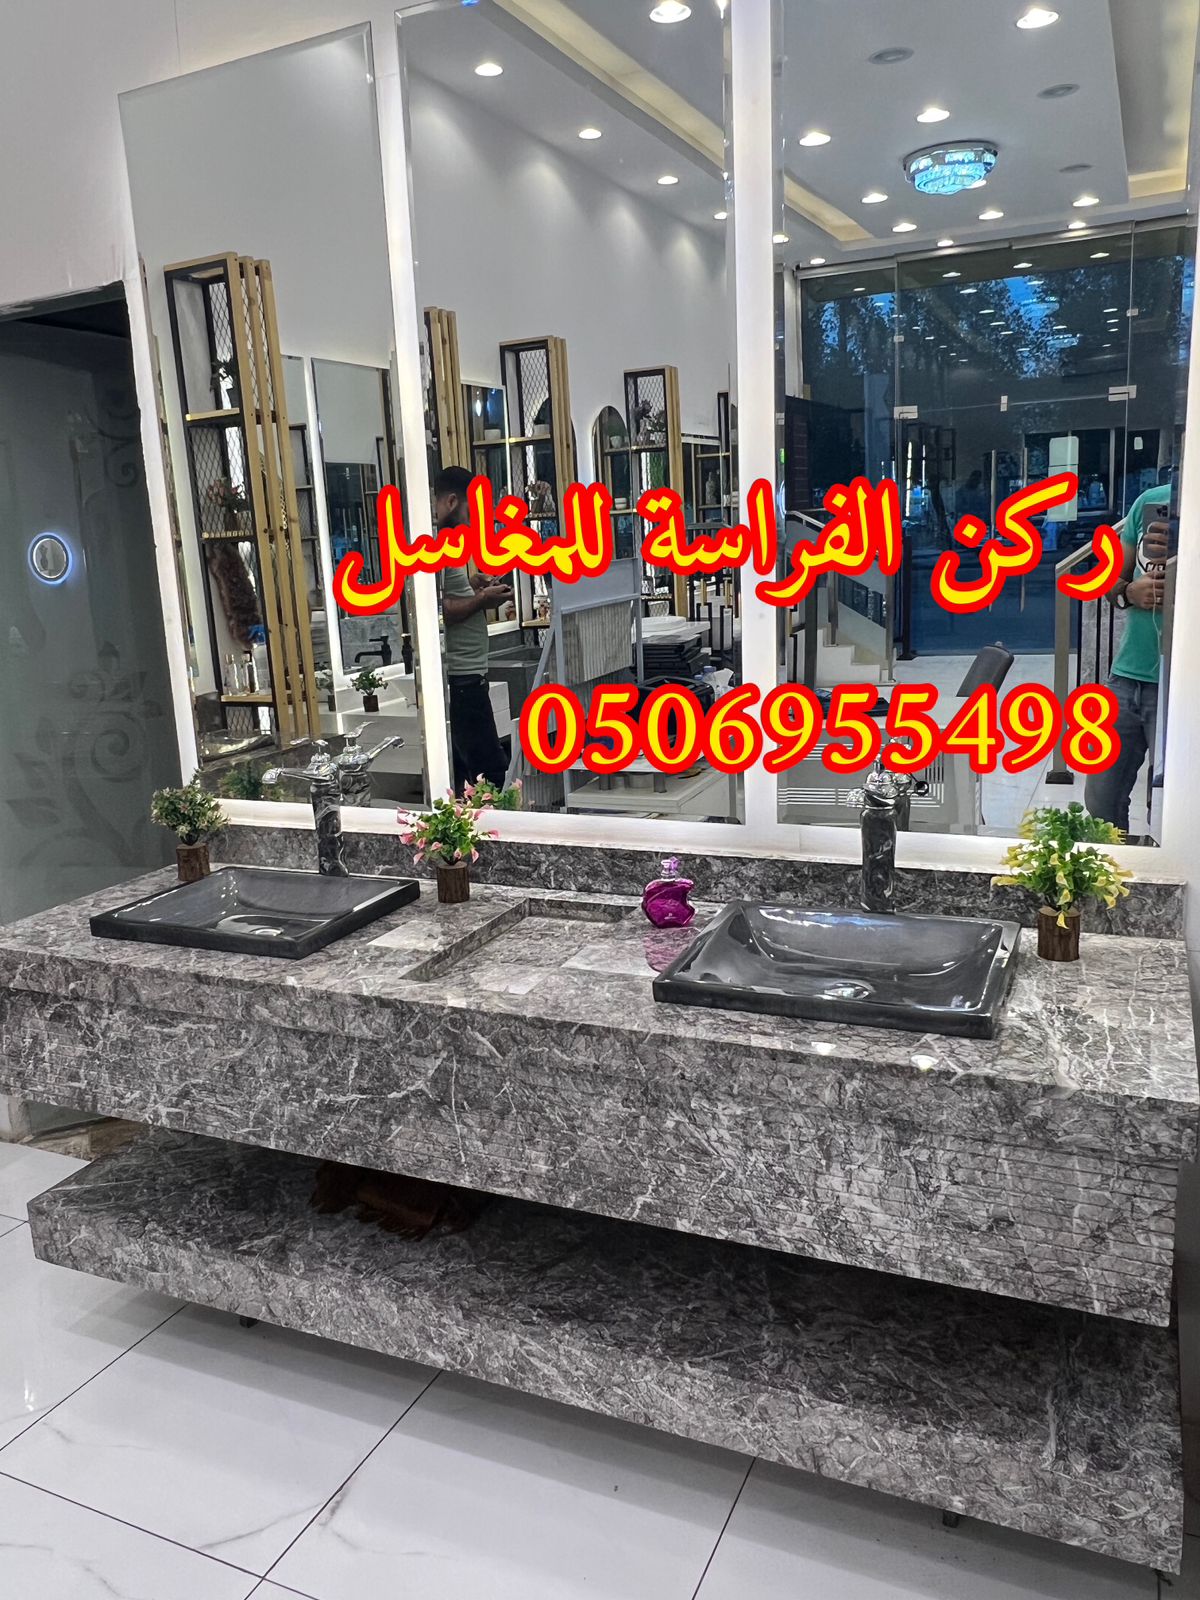 اشكال مغاسل رخام طبيعي وصناعي في الرياض,0506955498